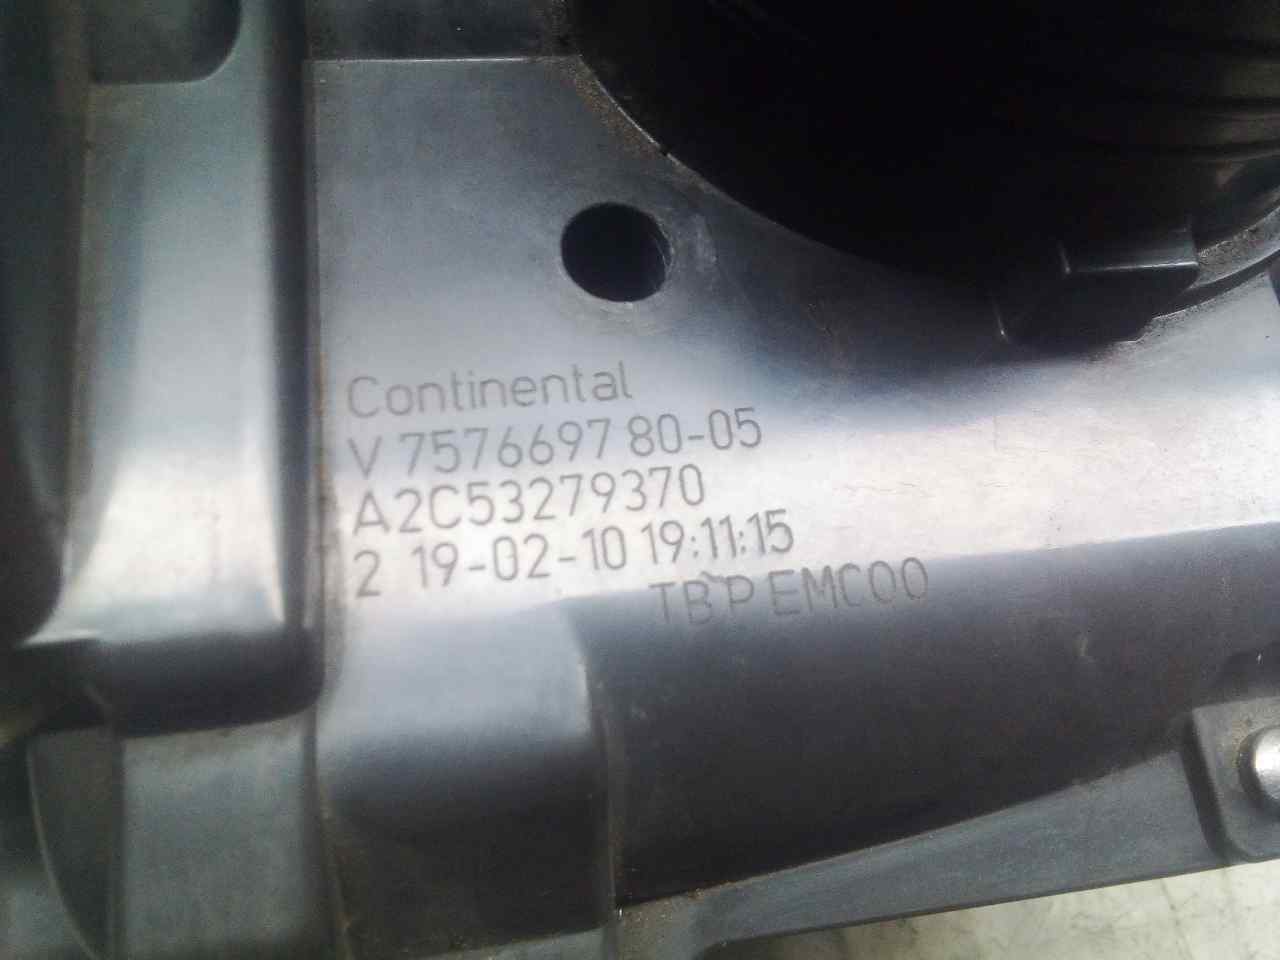 MINI Cooper R56 (2006-2015) Droselinė sklendė 75766978005, A2C53279370 18508025